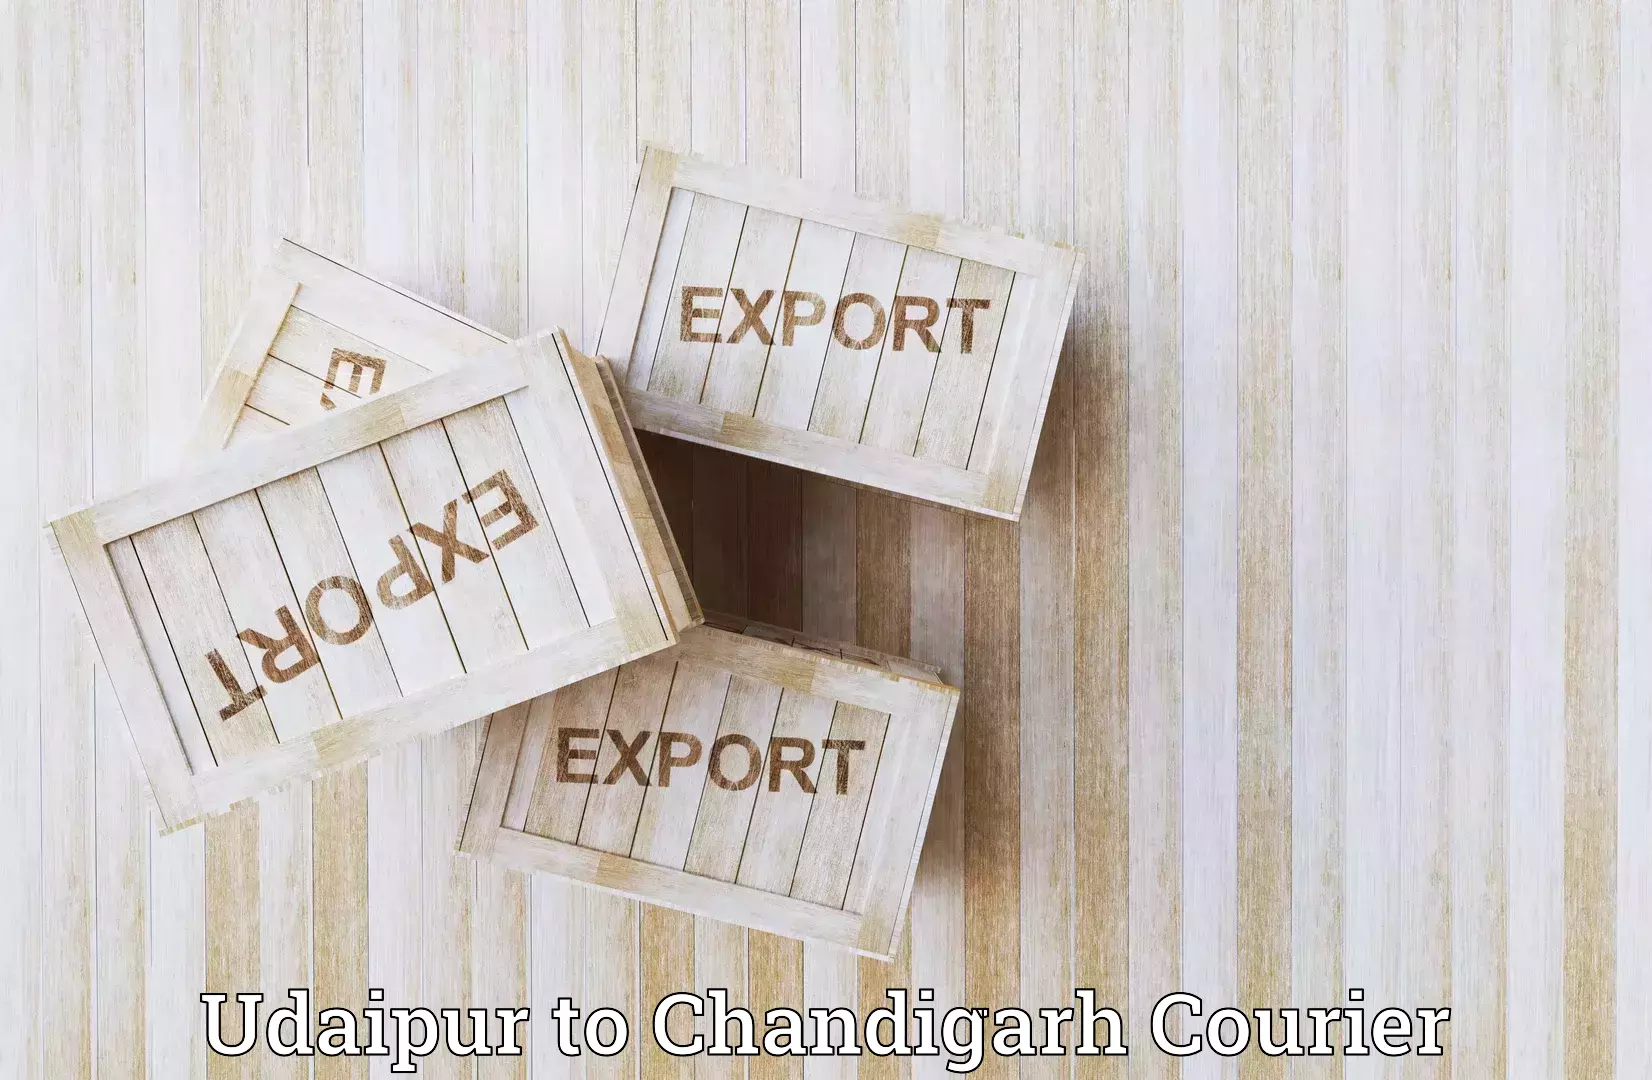 Efficient cargo services Udaipur to Chandigarh